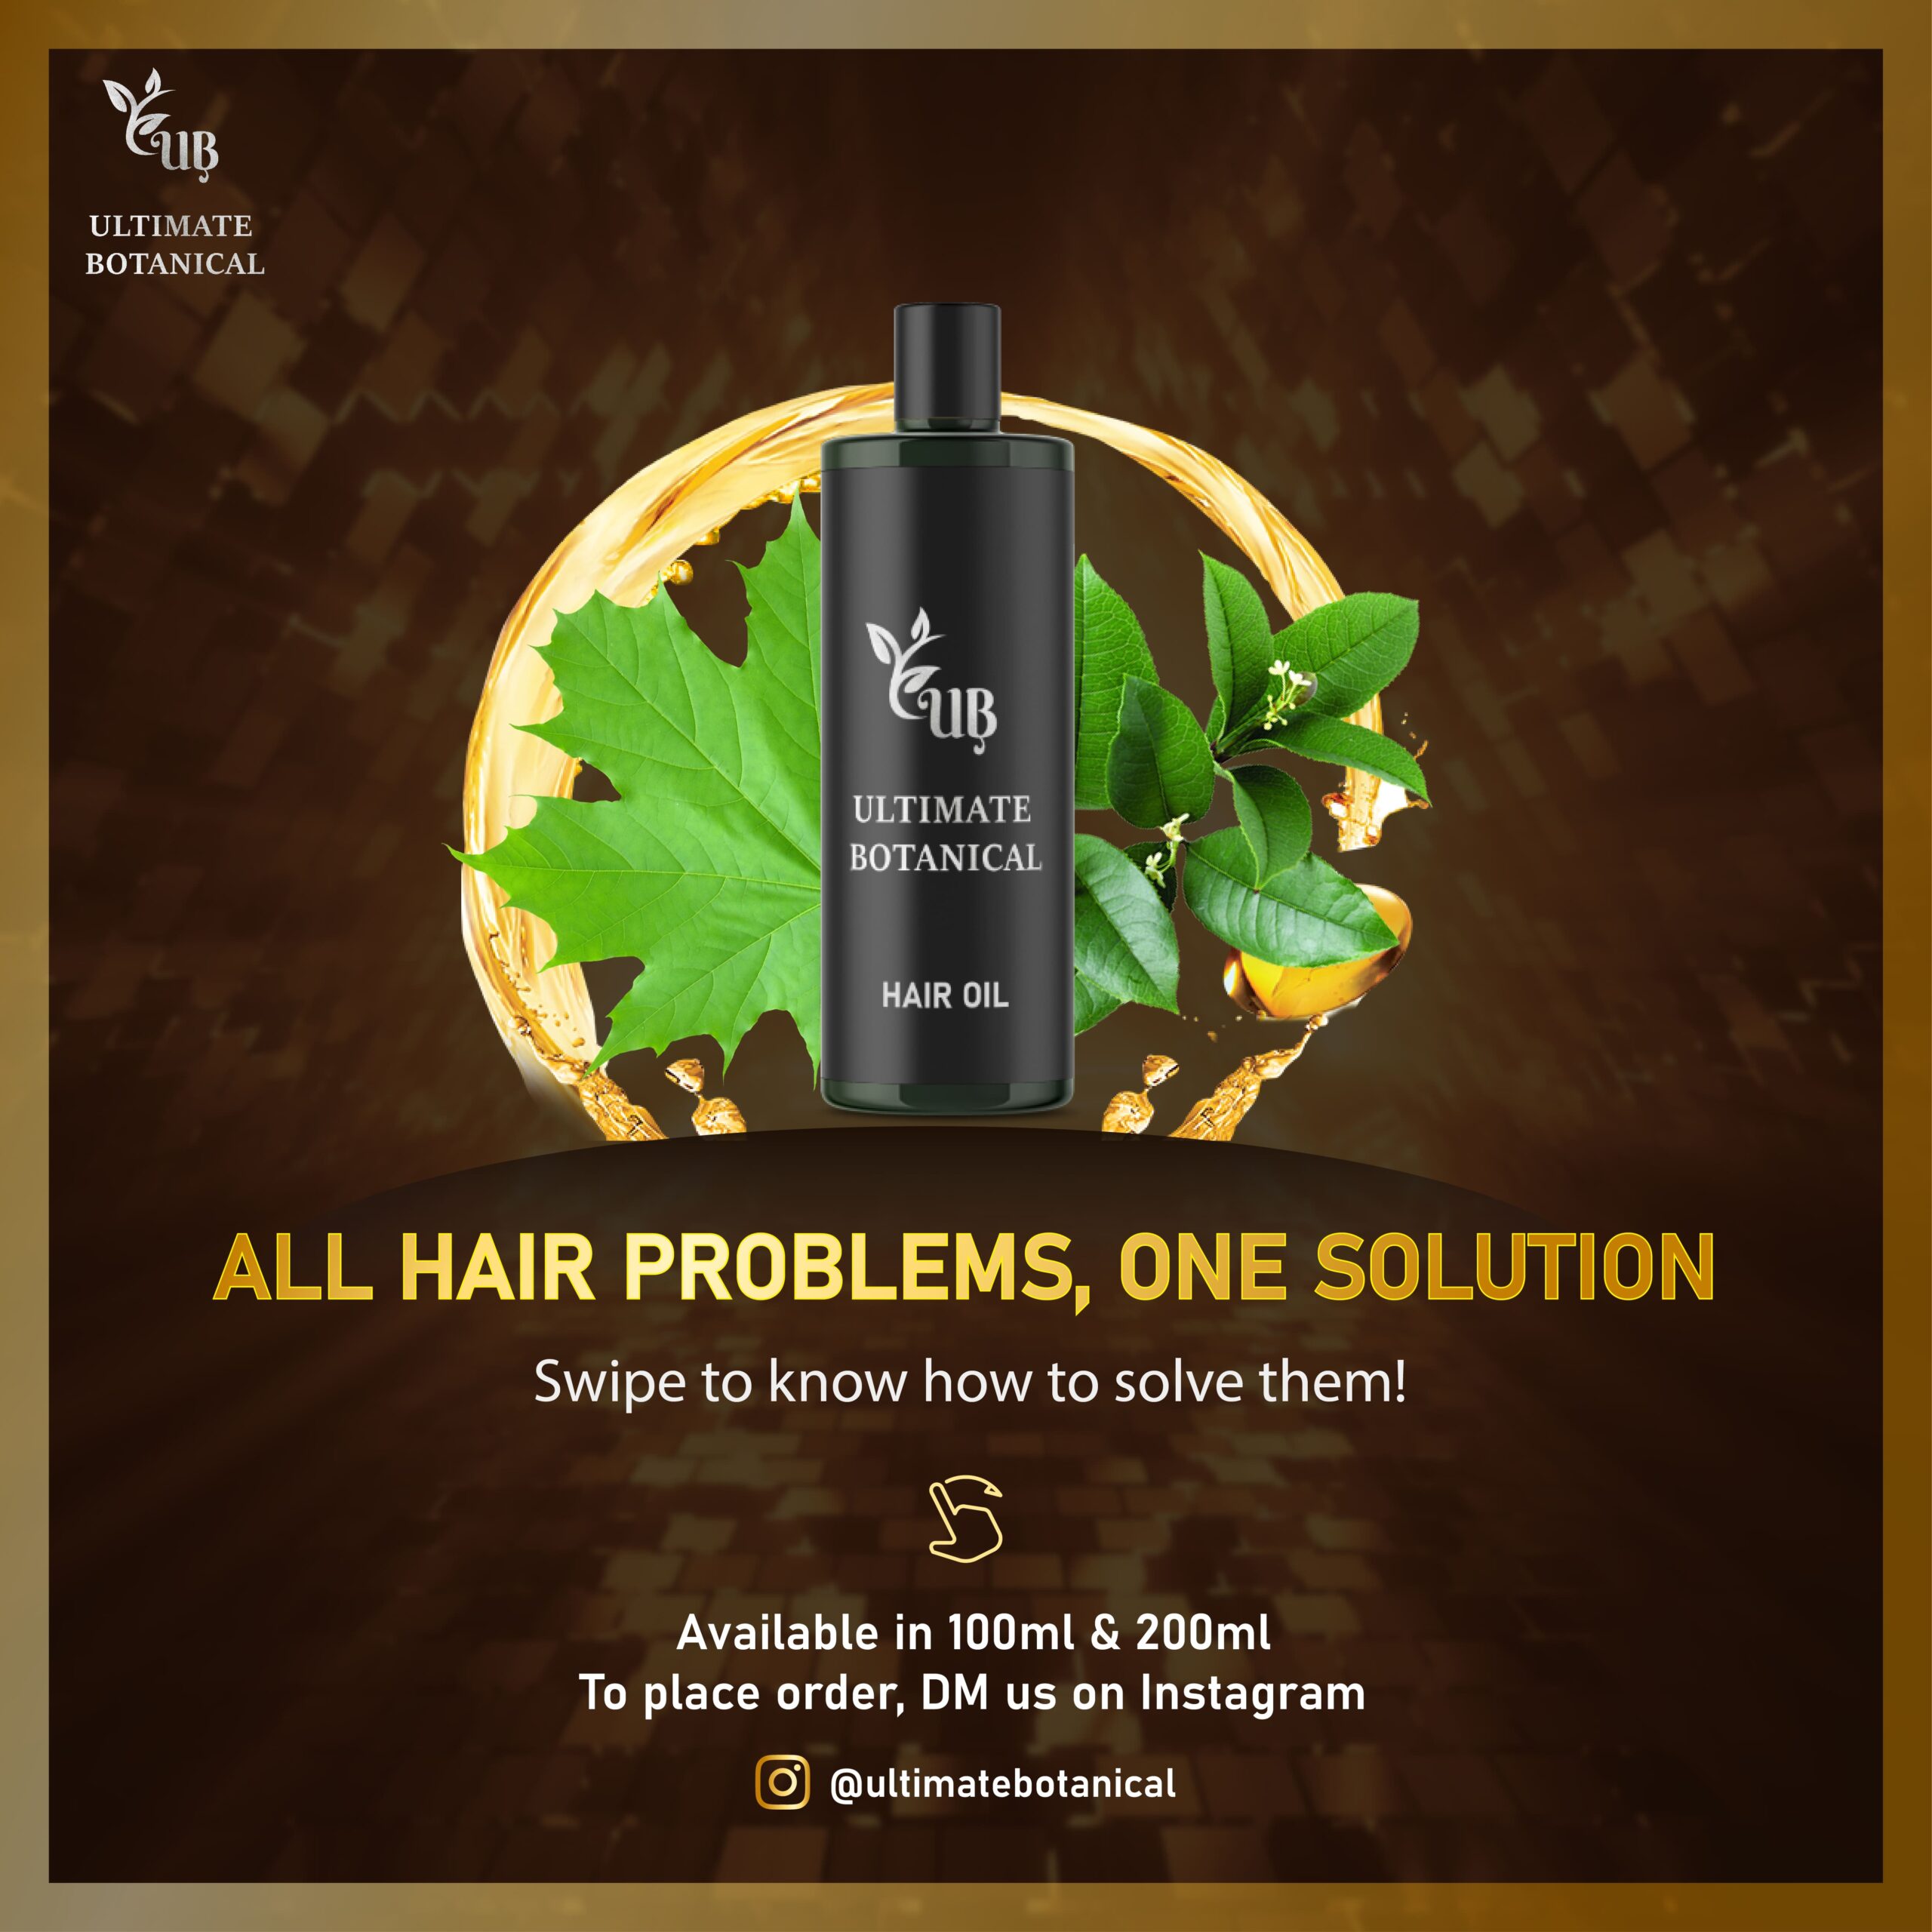 UB Hair Oil, Pakistan's best Hair Oil for Hair Problems